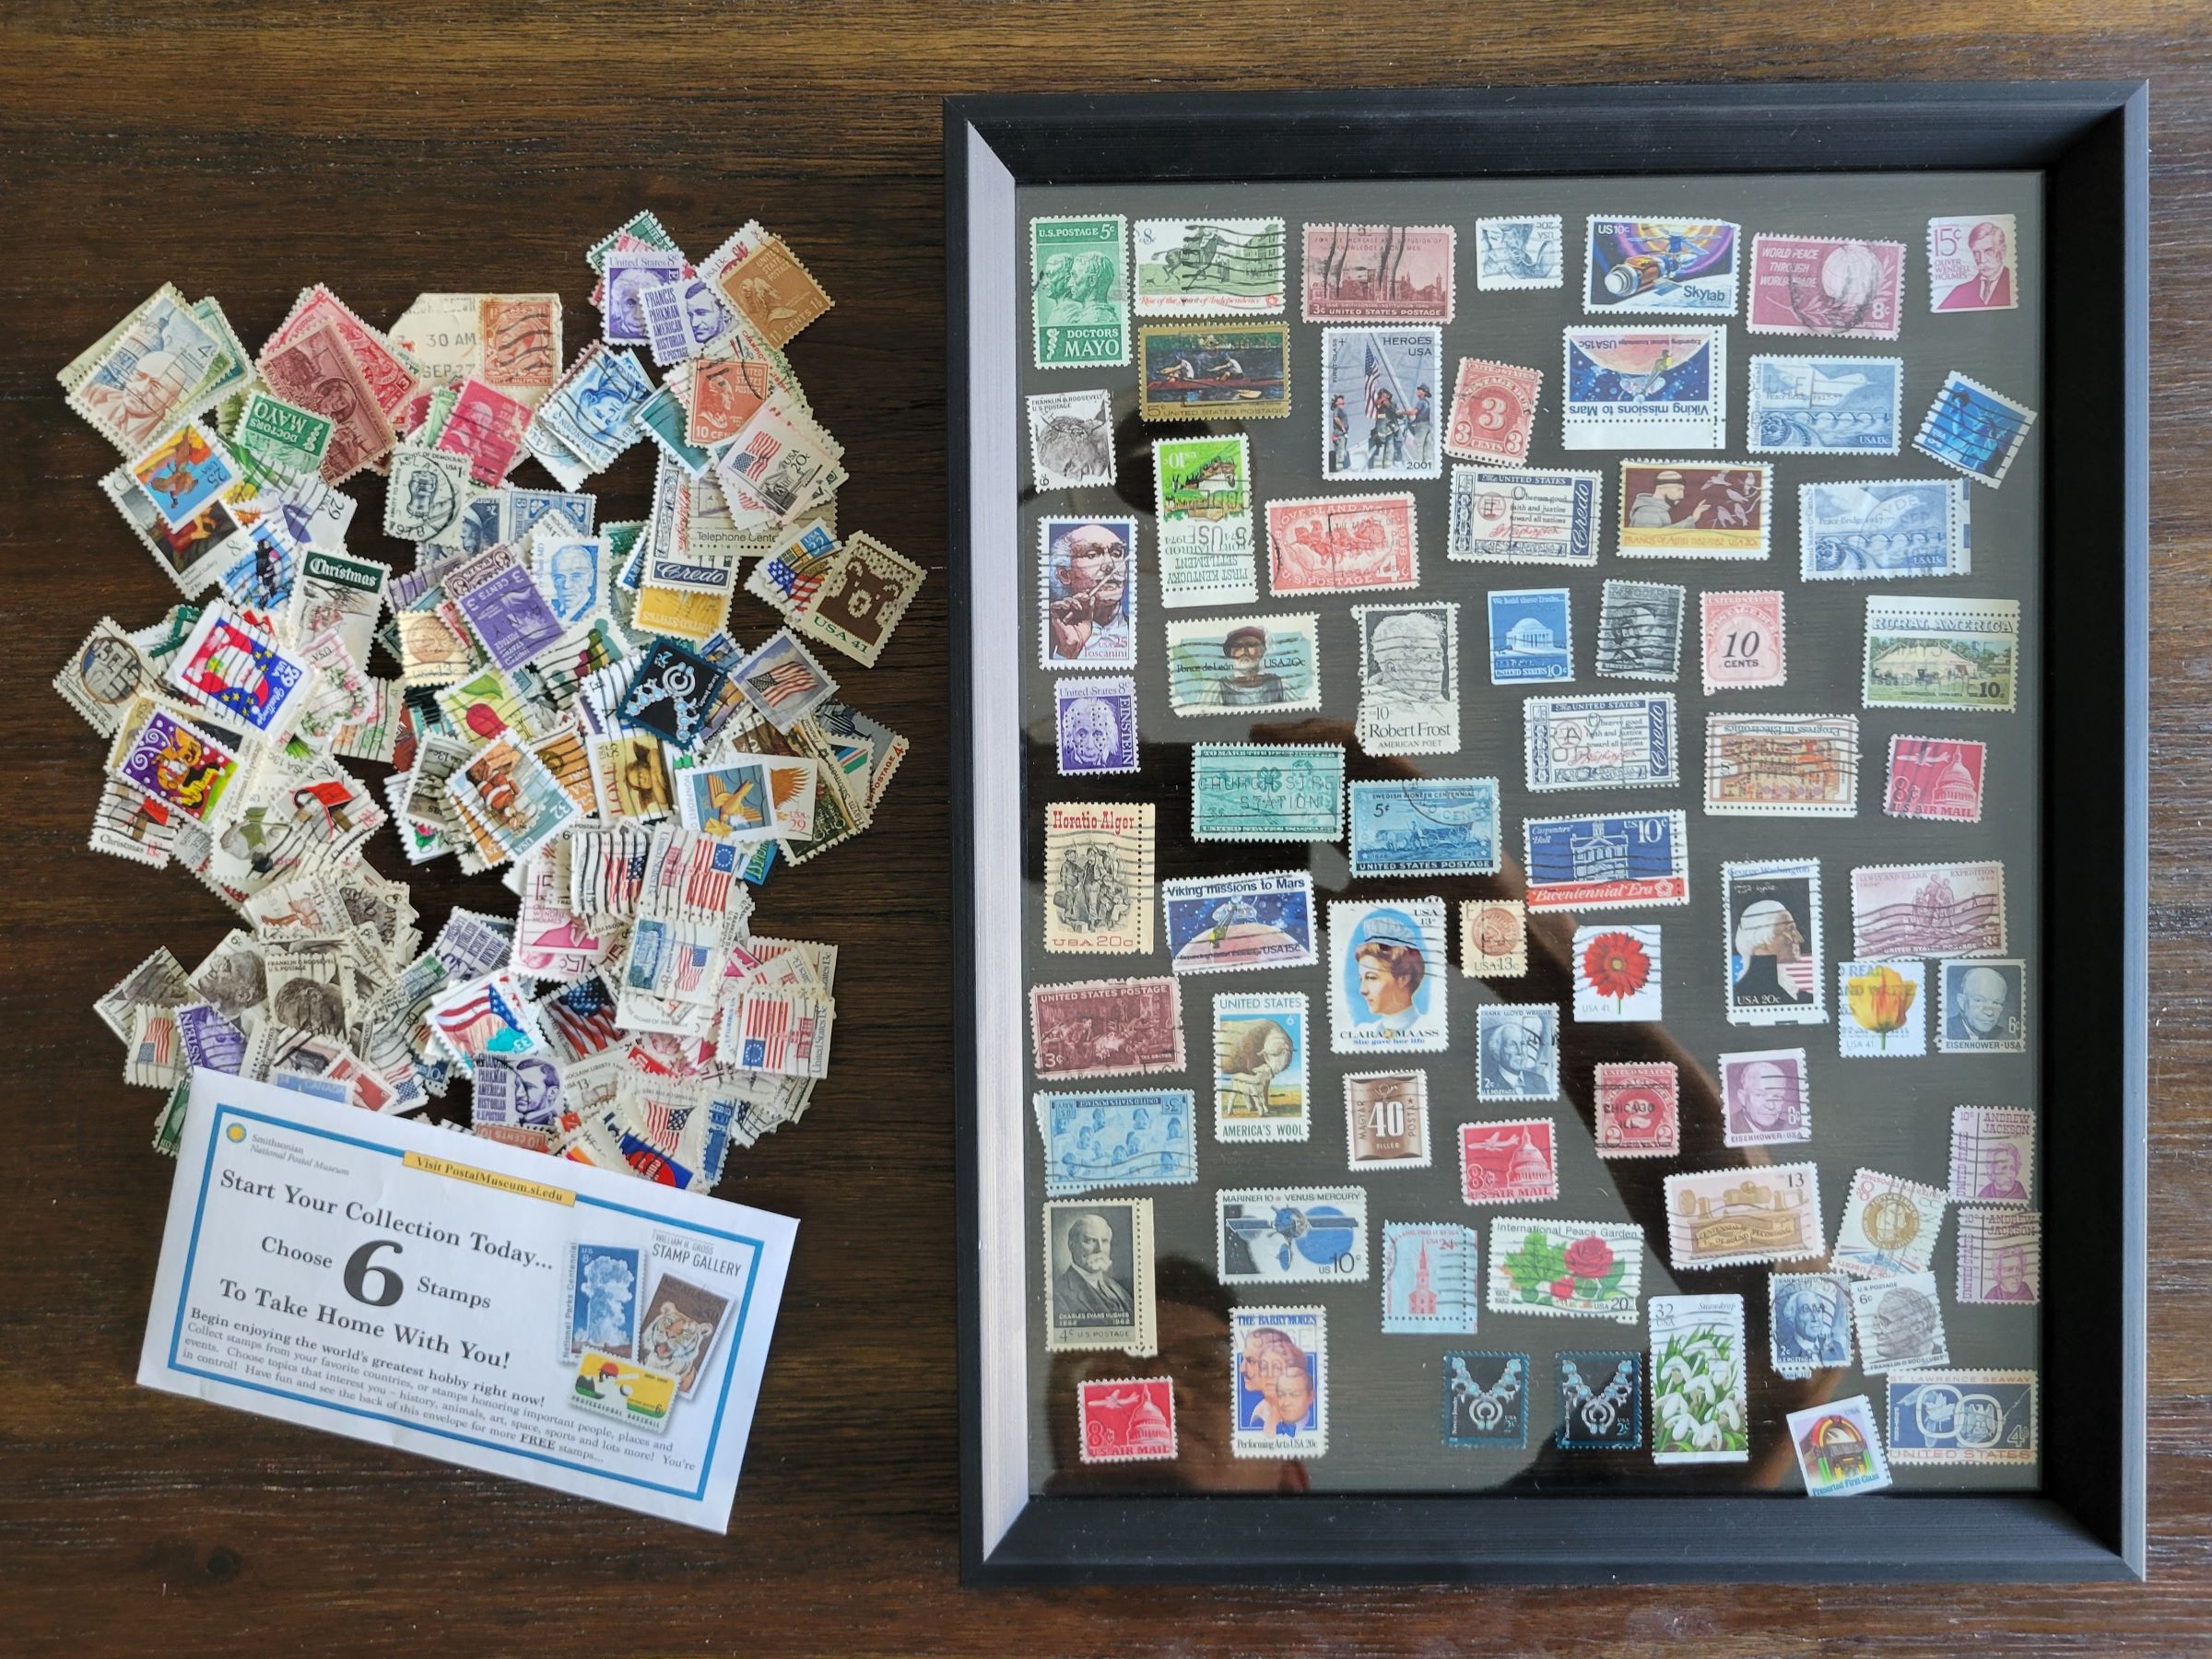 워싱턴DC의 스미소니언 우편박물관에서는 사용된 미국 우표를 6장까지 공짜로 가져가실 수 있어요~